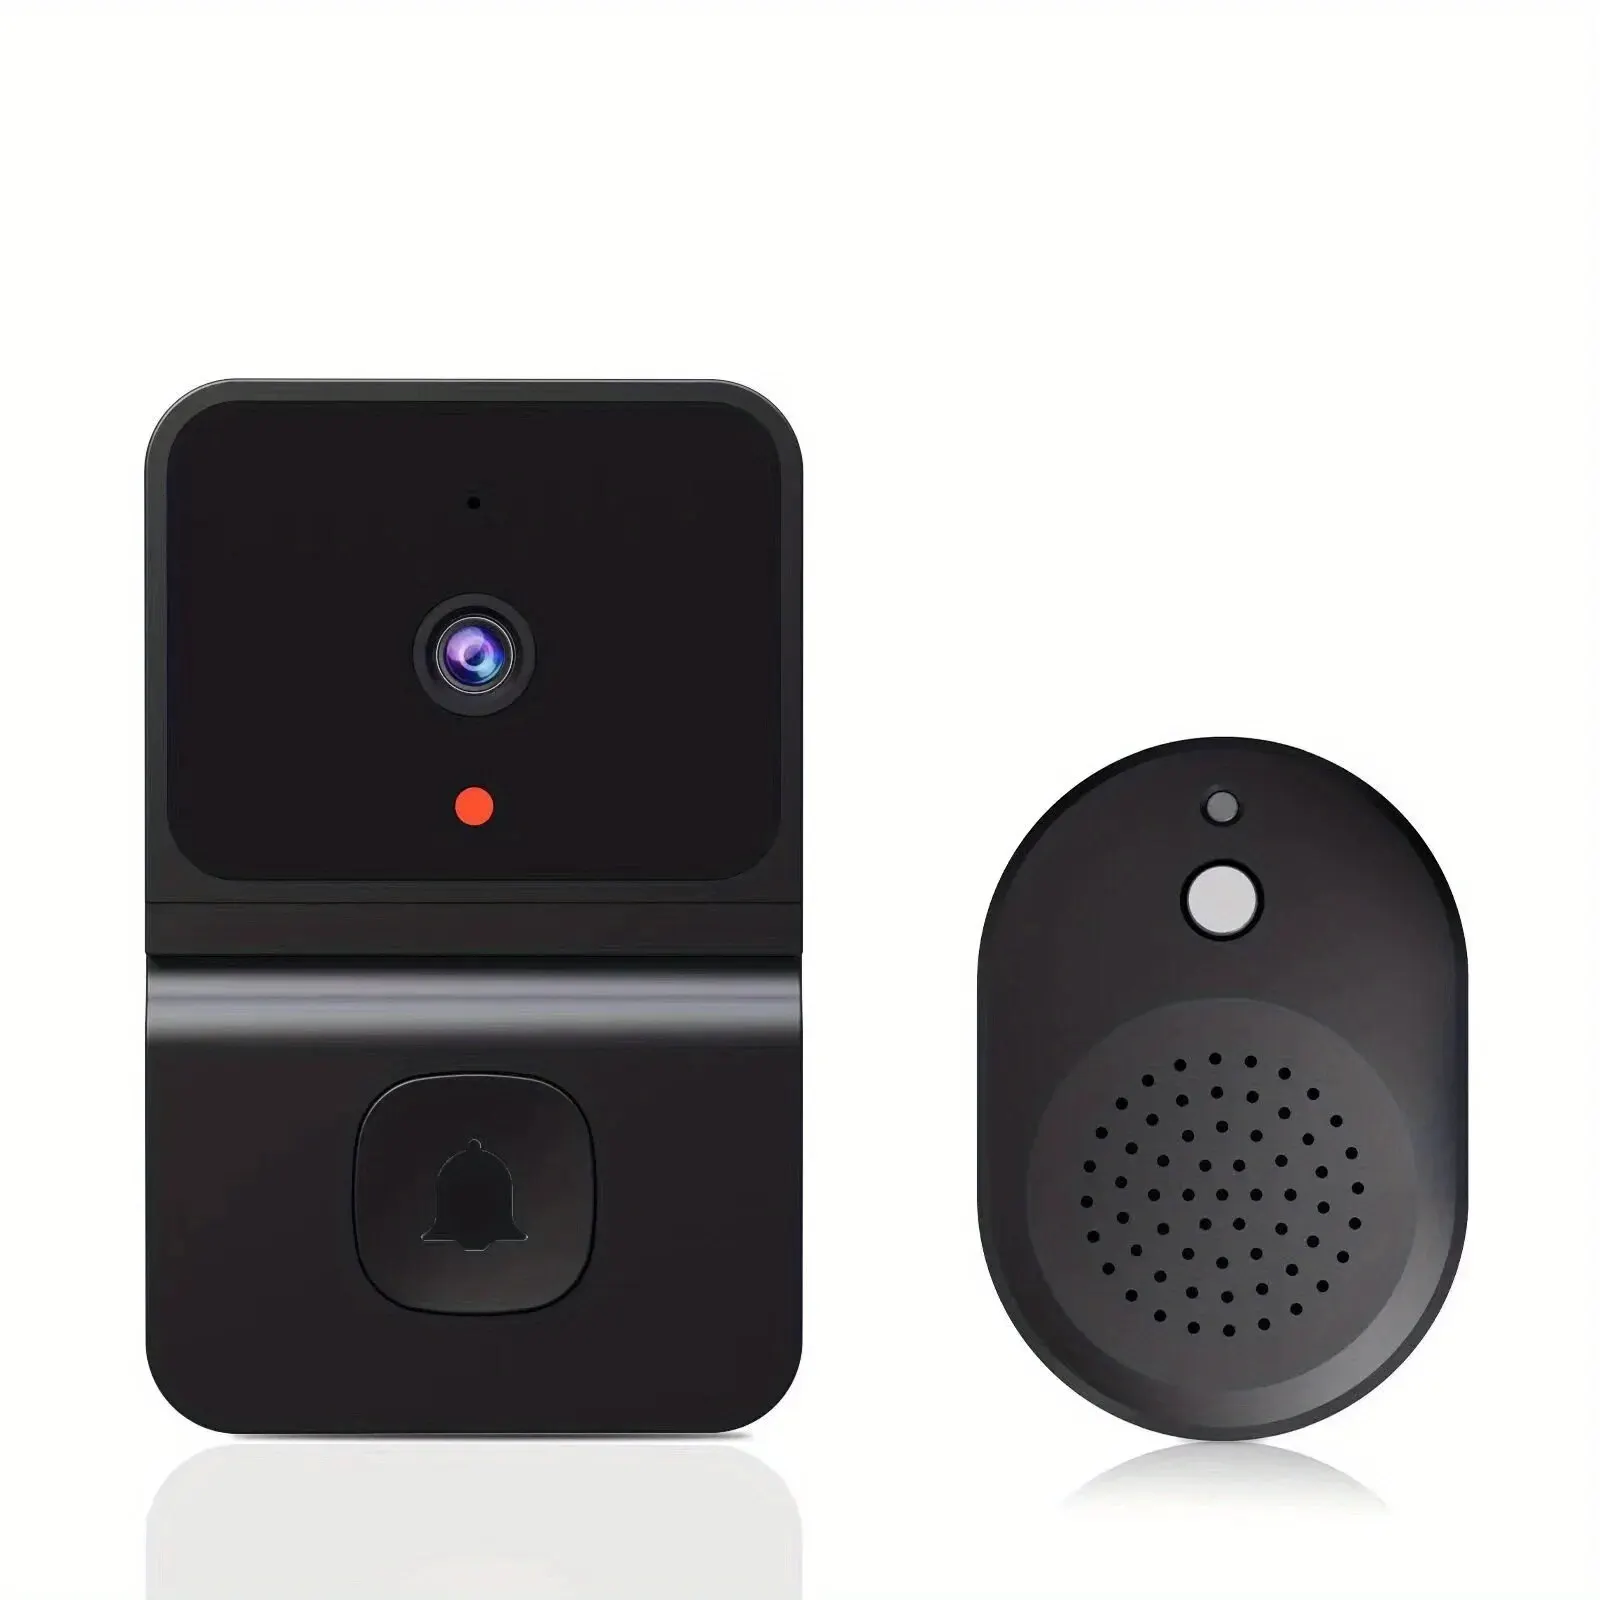 Draadloze Deurbel Wifi Outdoor Hd Camera Beveiliging Deur Bell Night Vision Video Intercom Stemverandering Home Monitor Deur Voor Telefoon